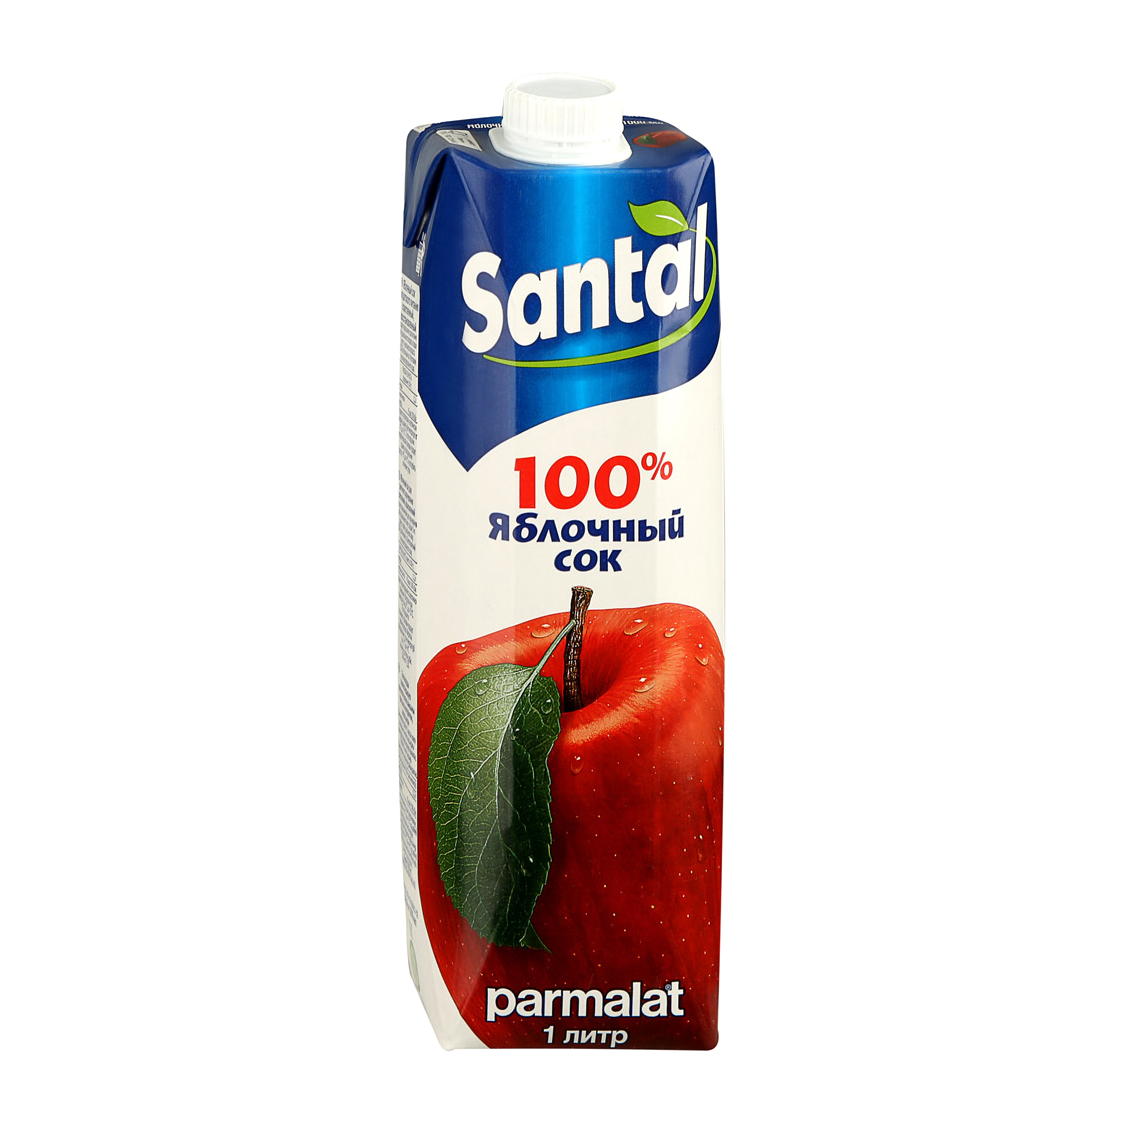 Сок Santal яблочный 100% 1 л сок santal апельсиновый 100% 1 л